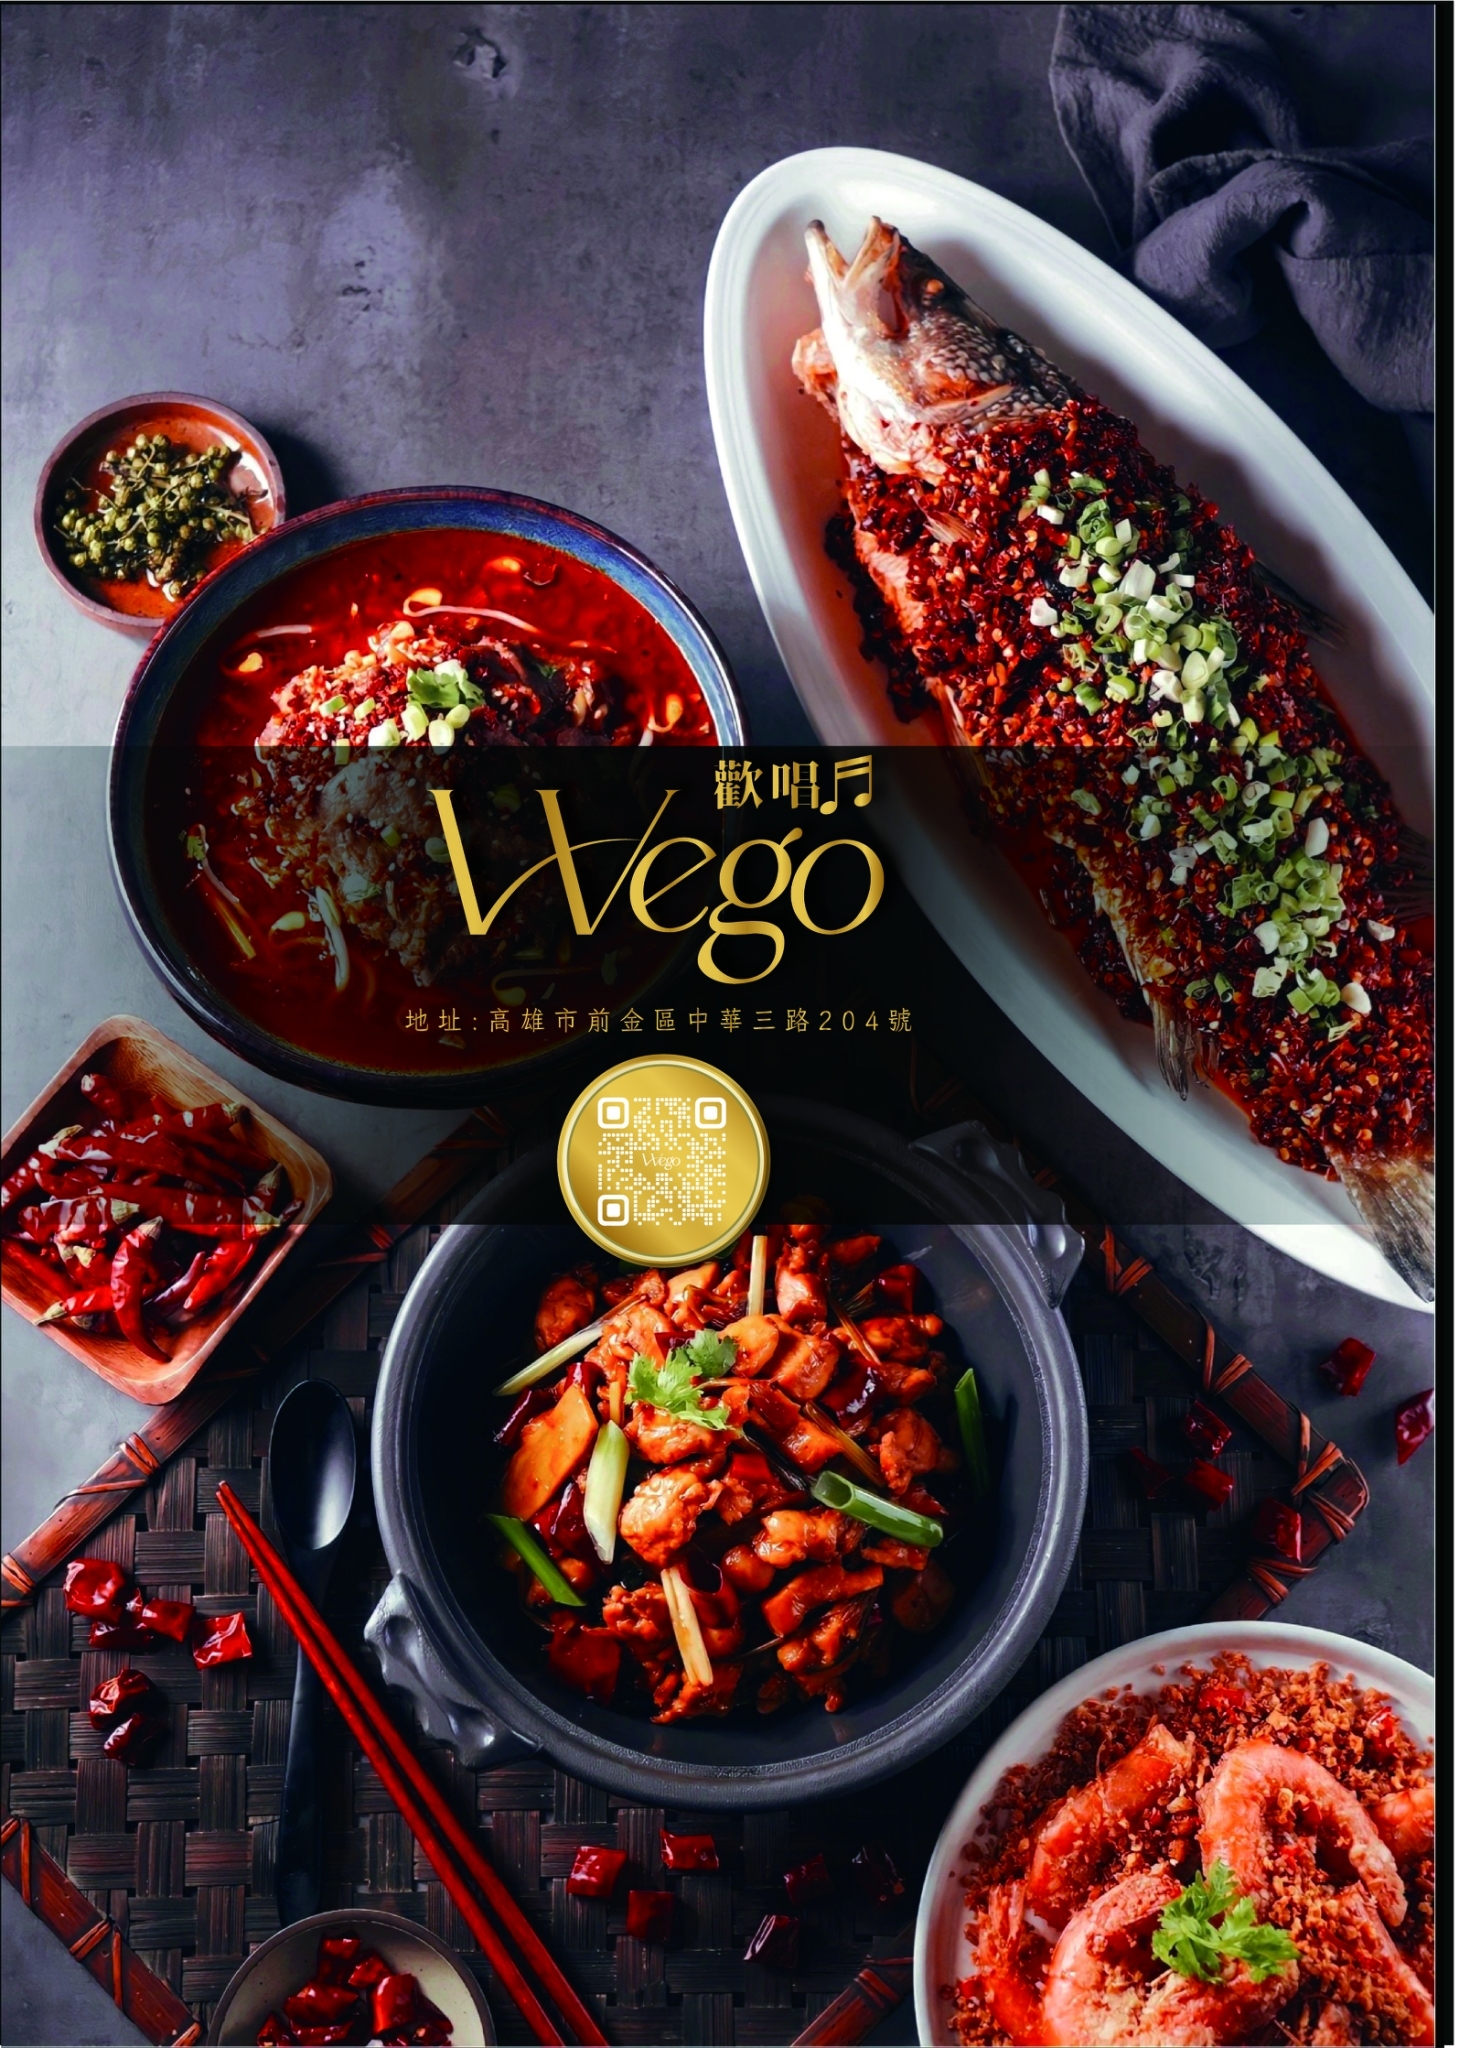 Wego價格,Wego包廂,Wego地址,Wego歡唱,Wego消費,Wego營業資訊,Wego美食,Wego菜單,Wego訂位,Wego電話,高雄KTV,高雄包廂,高雄唱歌